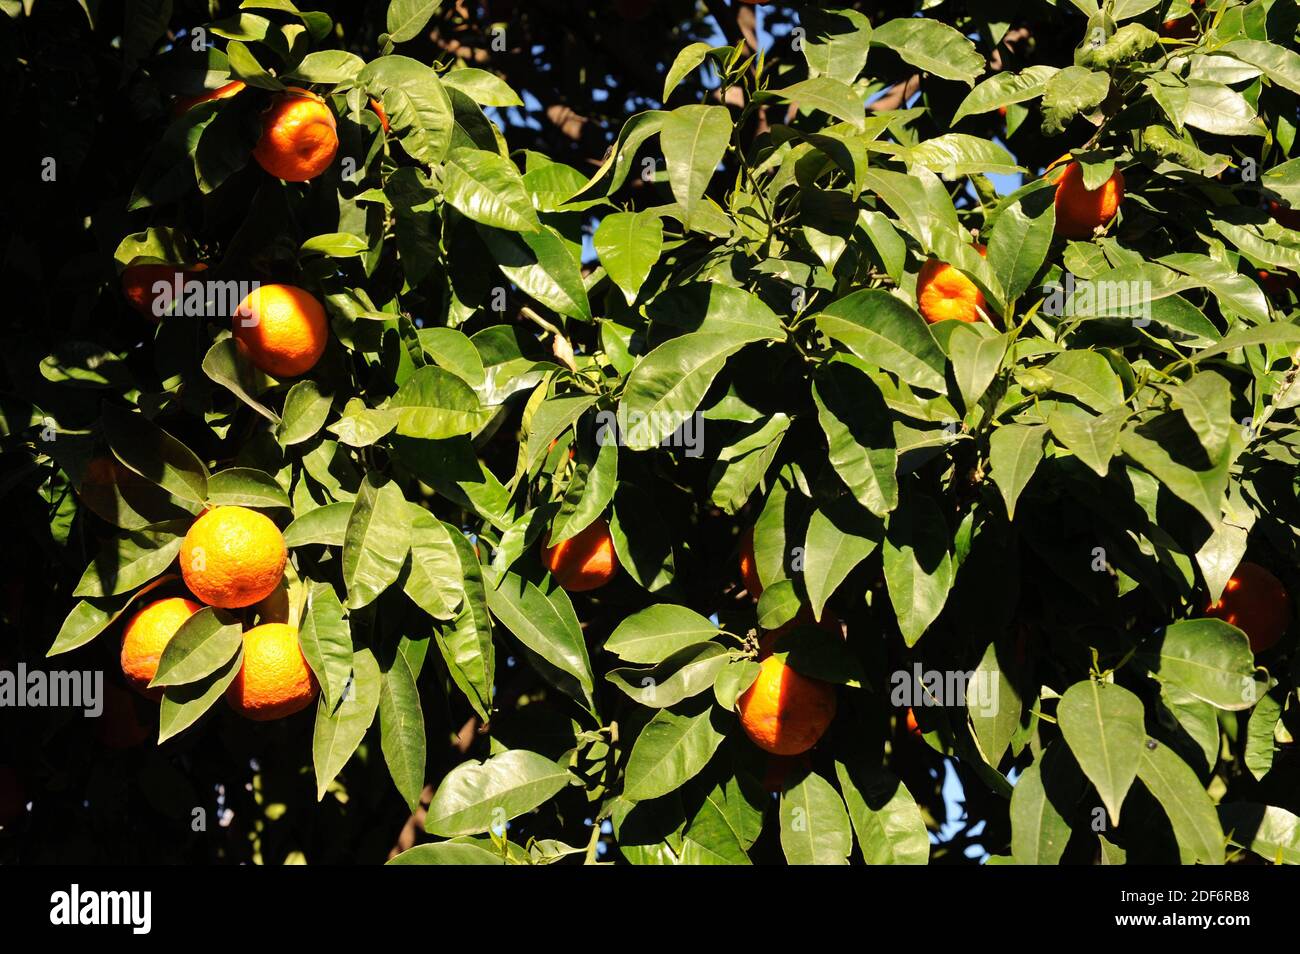 L'orange mandarine (Citrus reticulata clementina) est un petit arbre originaire du sud de la Chine. Ses fruits (mandarines) sont comestibles. Détail fruits et feuilles. Banque D'Images